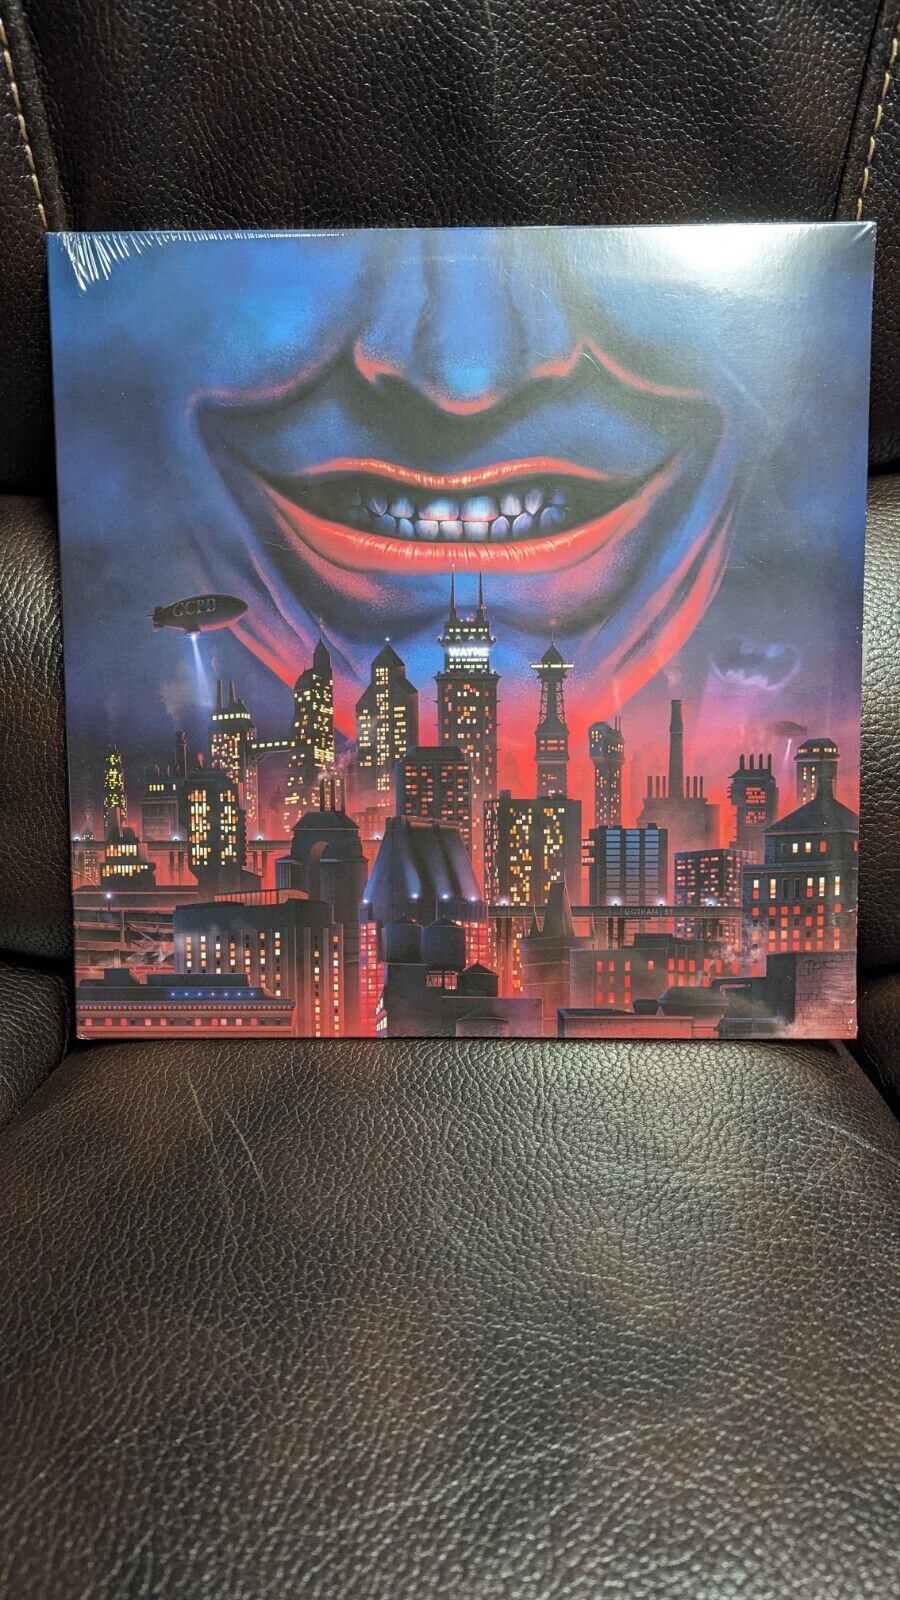 Batman Vinyl Record - Gotham ‘89 2xLP Vinyl Record New